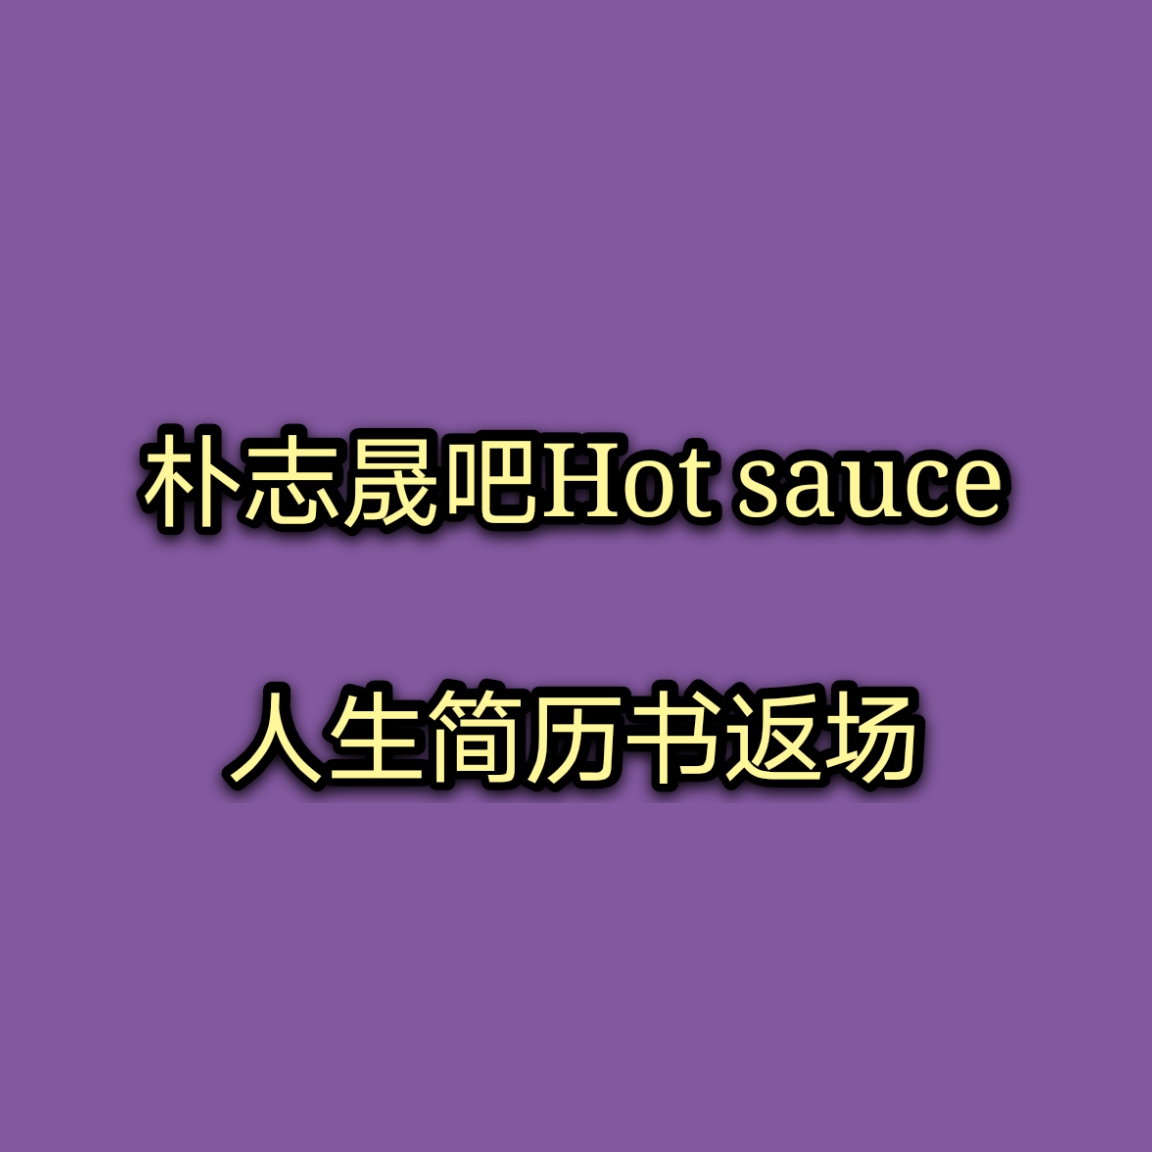 [全款 HotSauce人生简历书包邮专] NCT DREAM - Album Vol.1 [맛 (Hot Sauce)] (写真集版本) (随机版本) (*购买2张或以上是会提供不同版本)_朴志晟吧_ParkJiSungBar